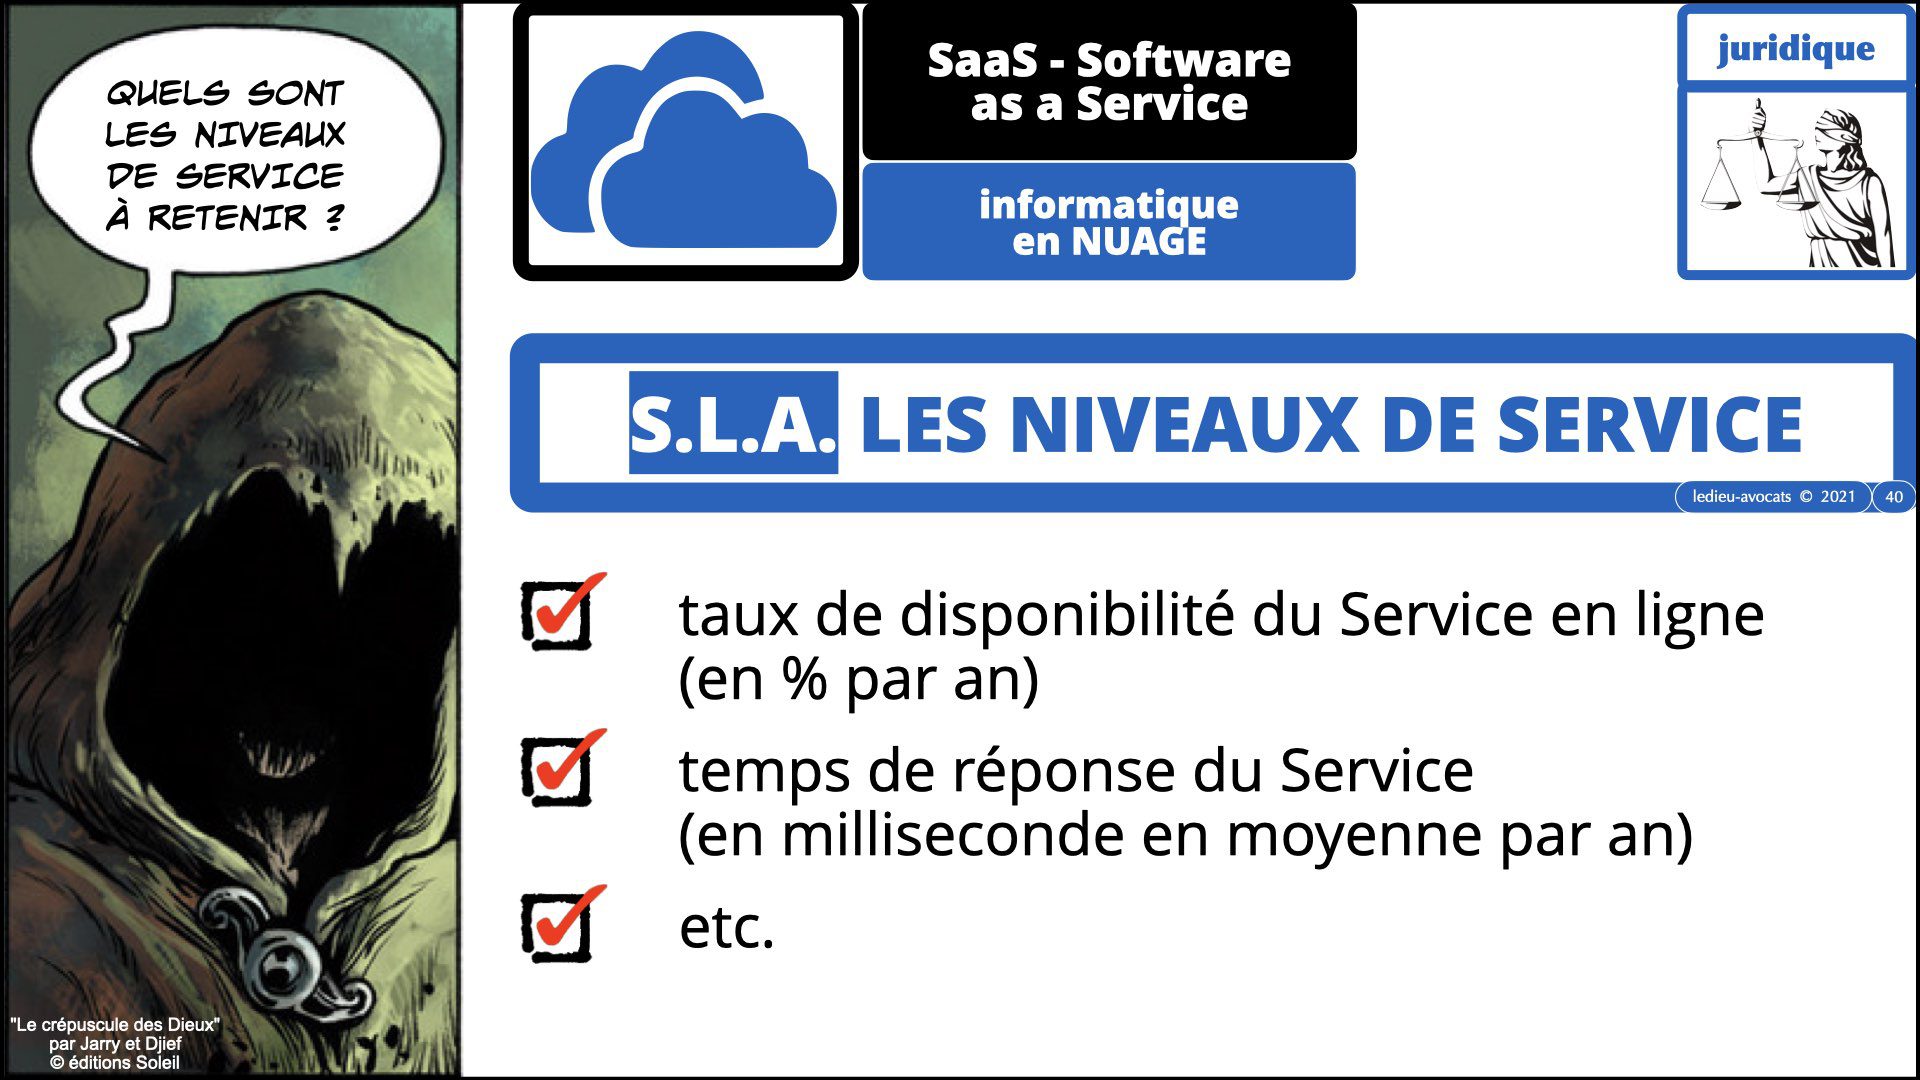 343 service LOGICIEL SaaS Software-as-a-Service cloud computing © Ledieu-Avocats technique droit numerique 30-08-2021.040